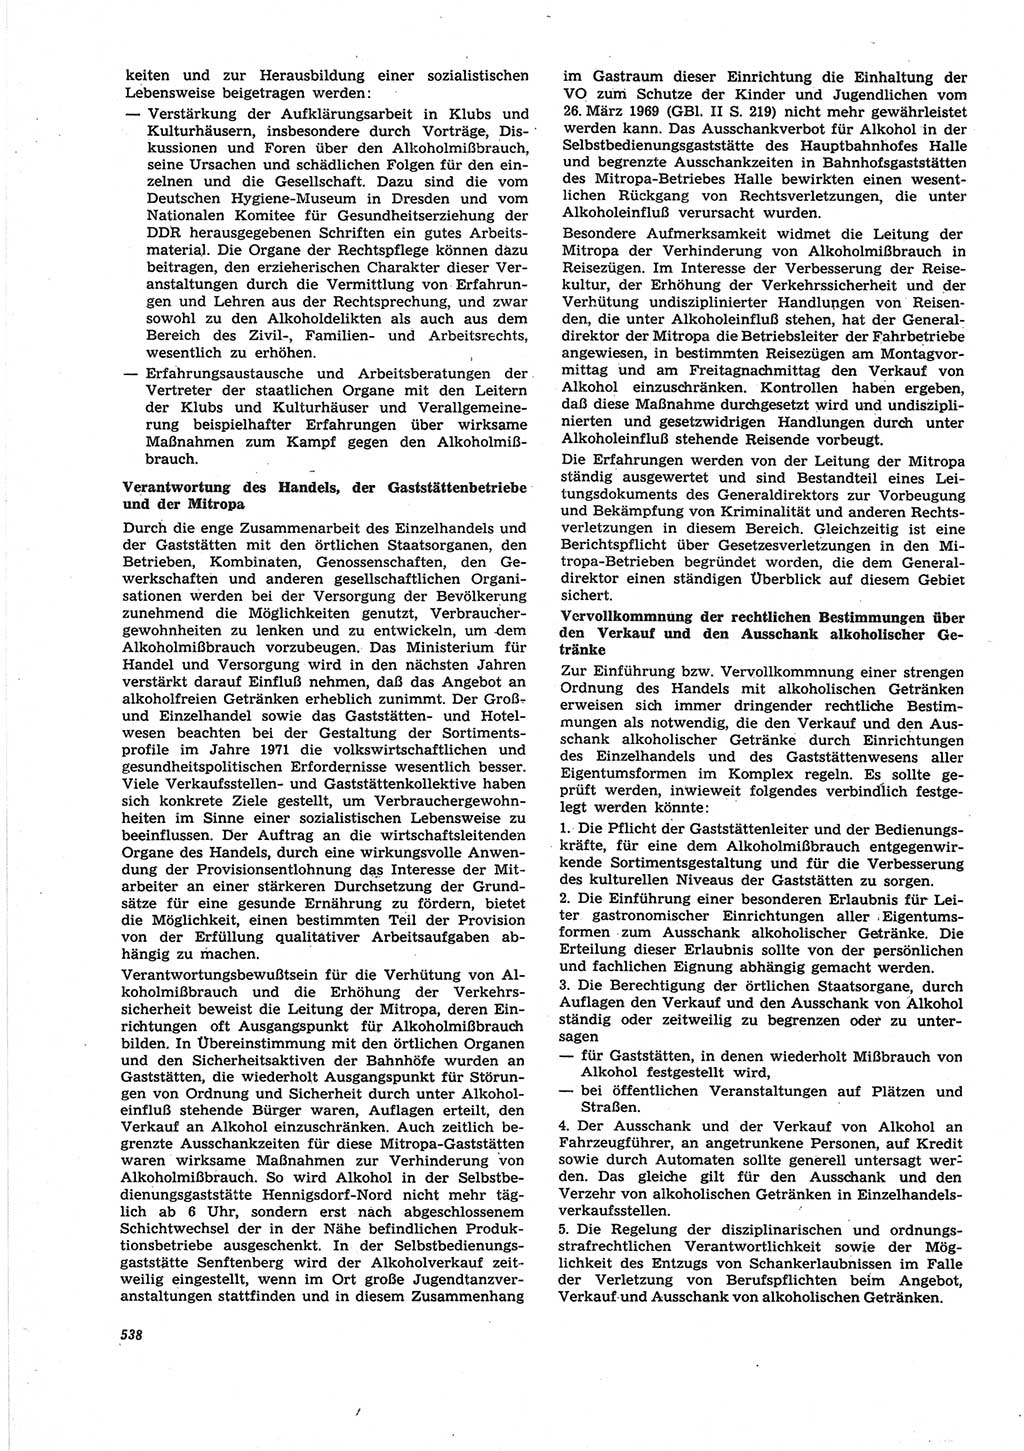 Neue Justiz (NJ), Zeitschrift für Recht und Rechtswissenschaft [Deutsche Demokratische Republik (DDR)], 25. Jahrgang 1971, Seite 538 (NJ DDR 1971, S. 538)